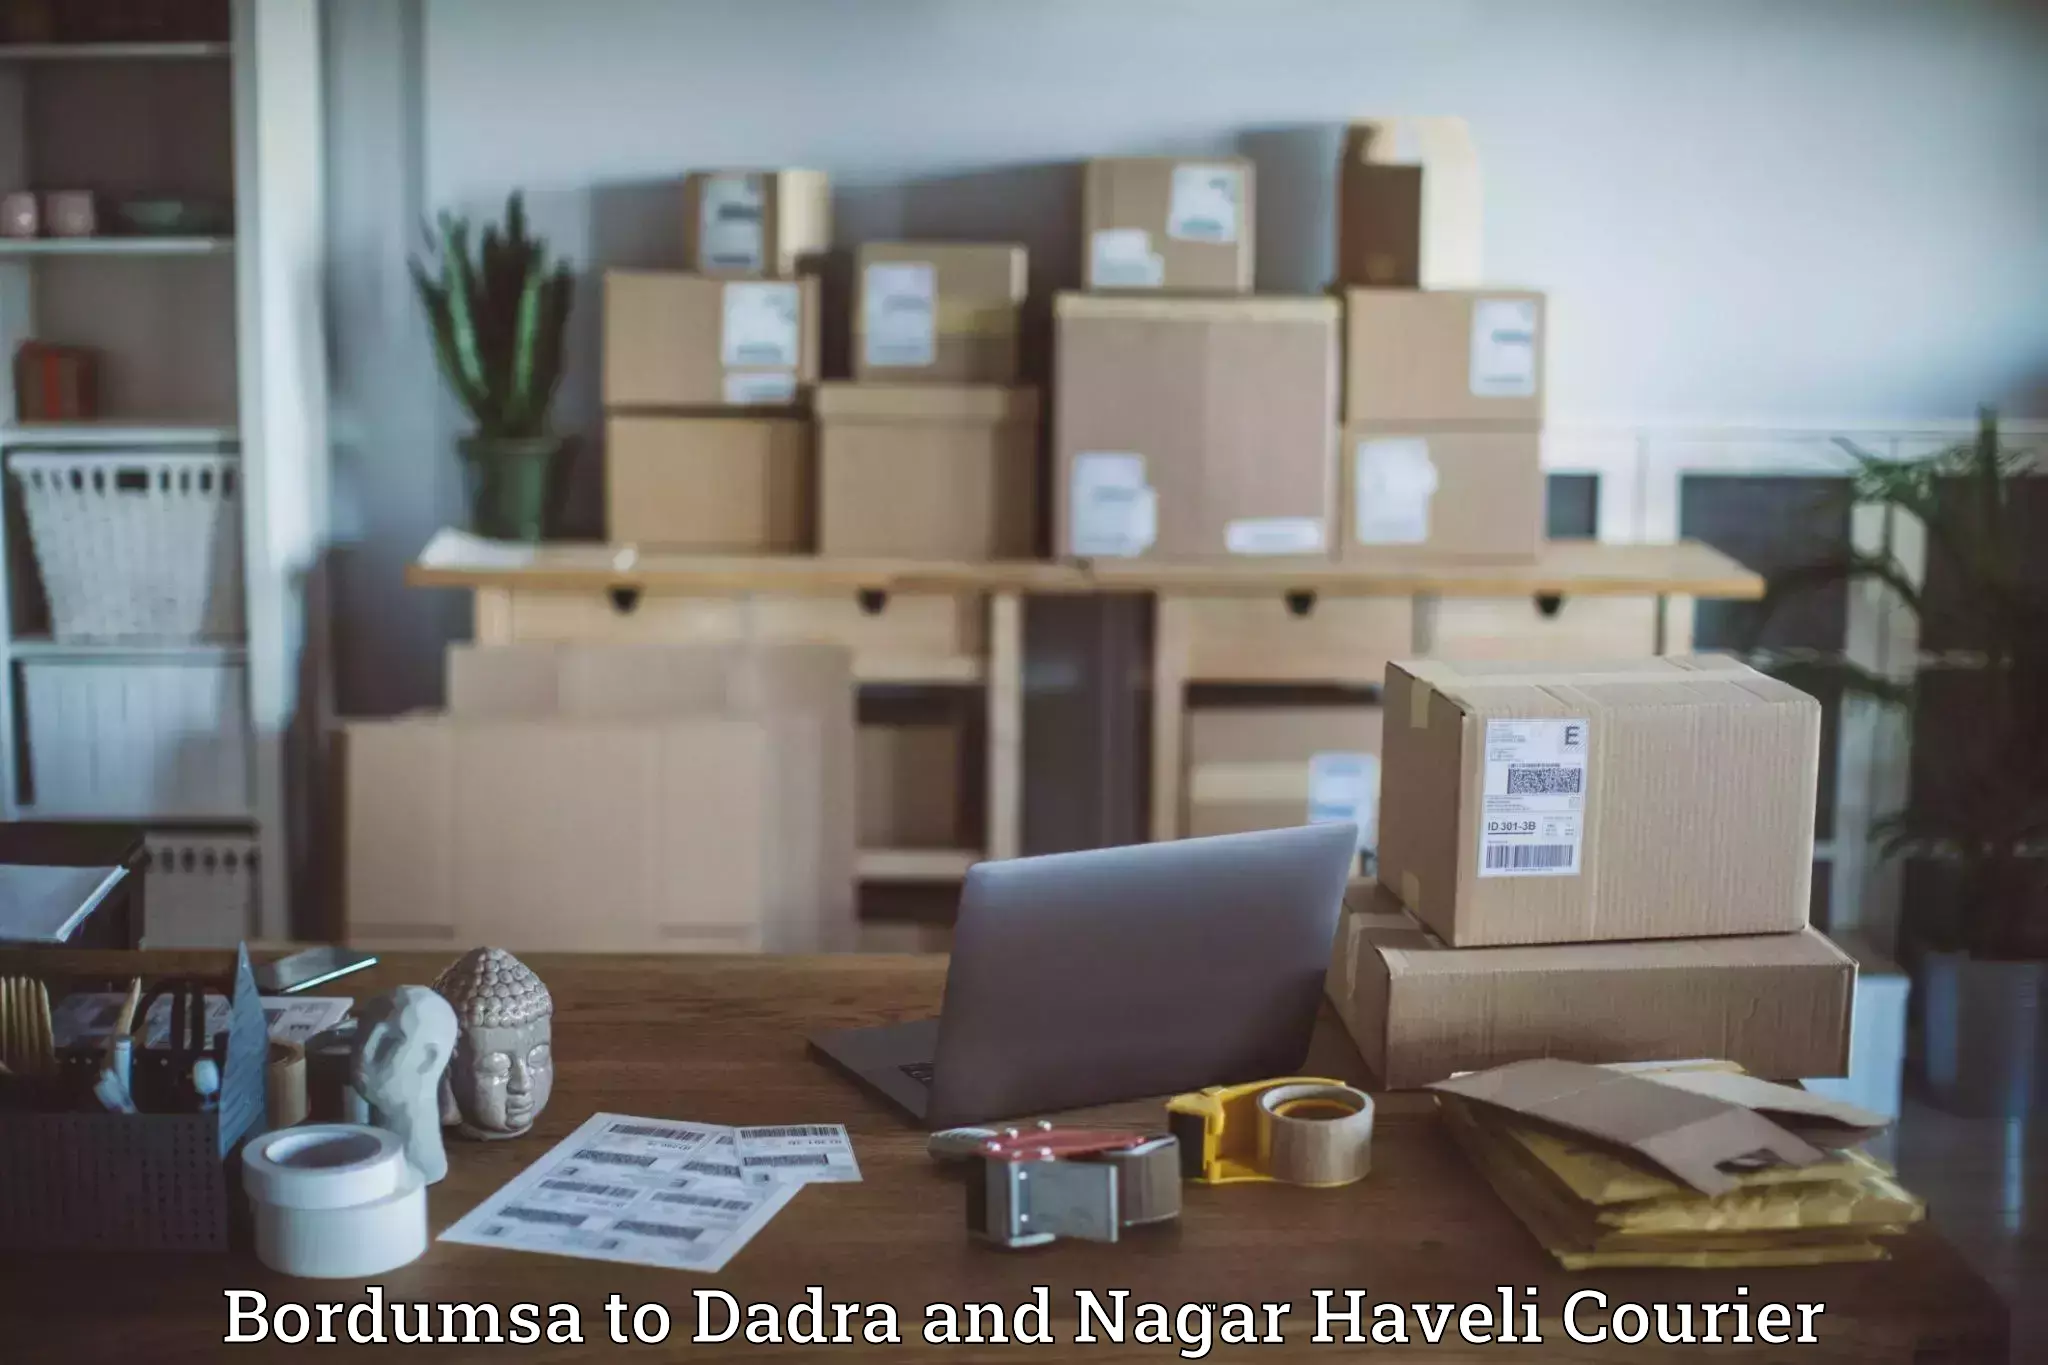 Quality courier partnerships Bordumsa to Dadra and Nagar Haveli